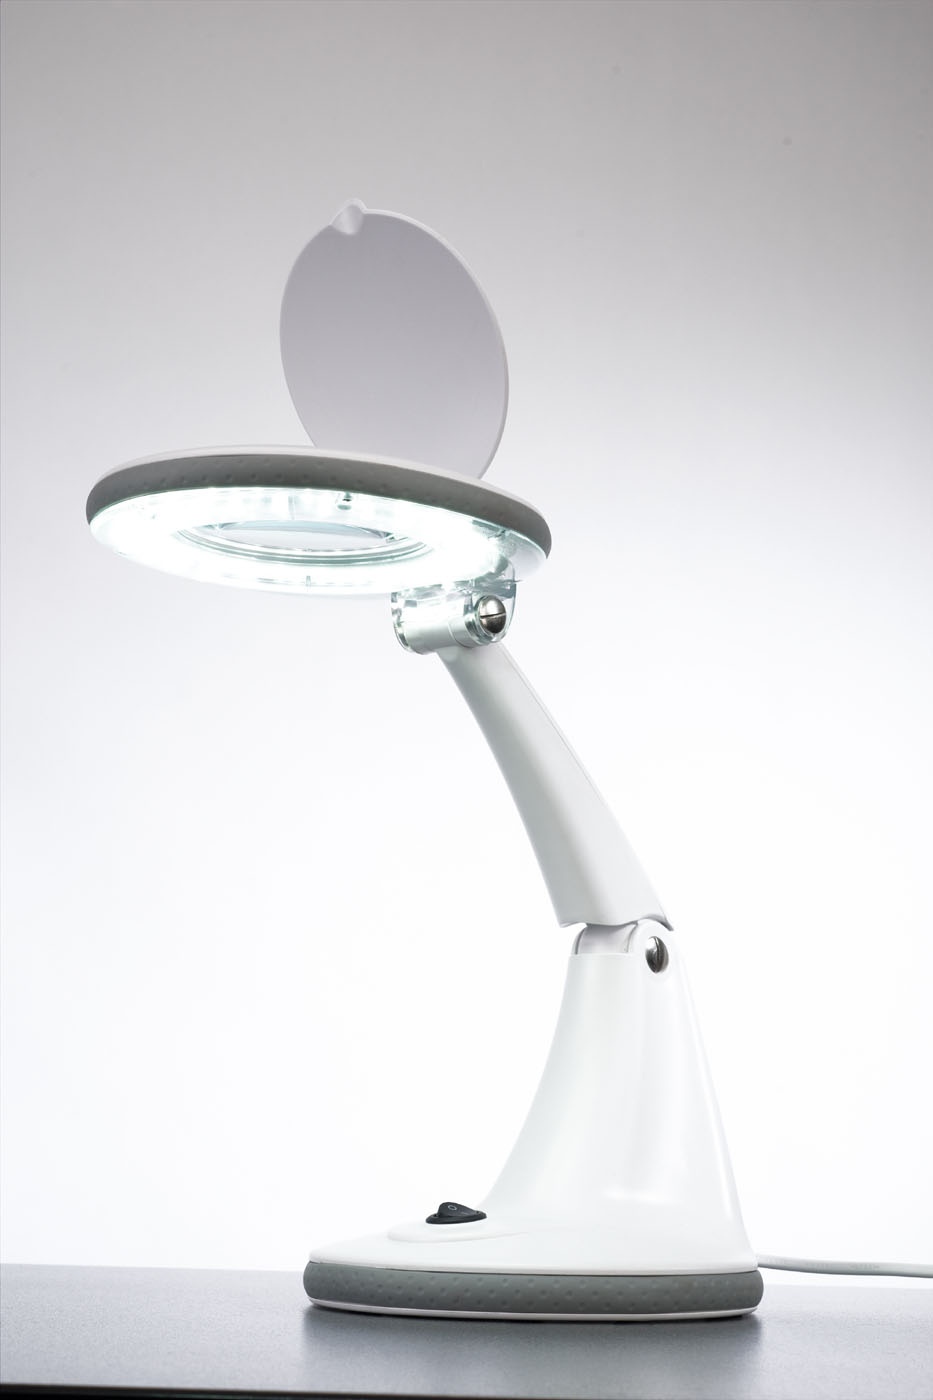  Sibel Lupenlampe in Tischausführung für Präzisionsarbeiten / Kosmetik 